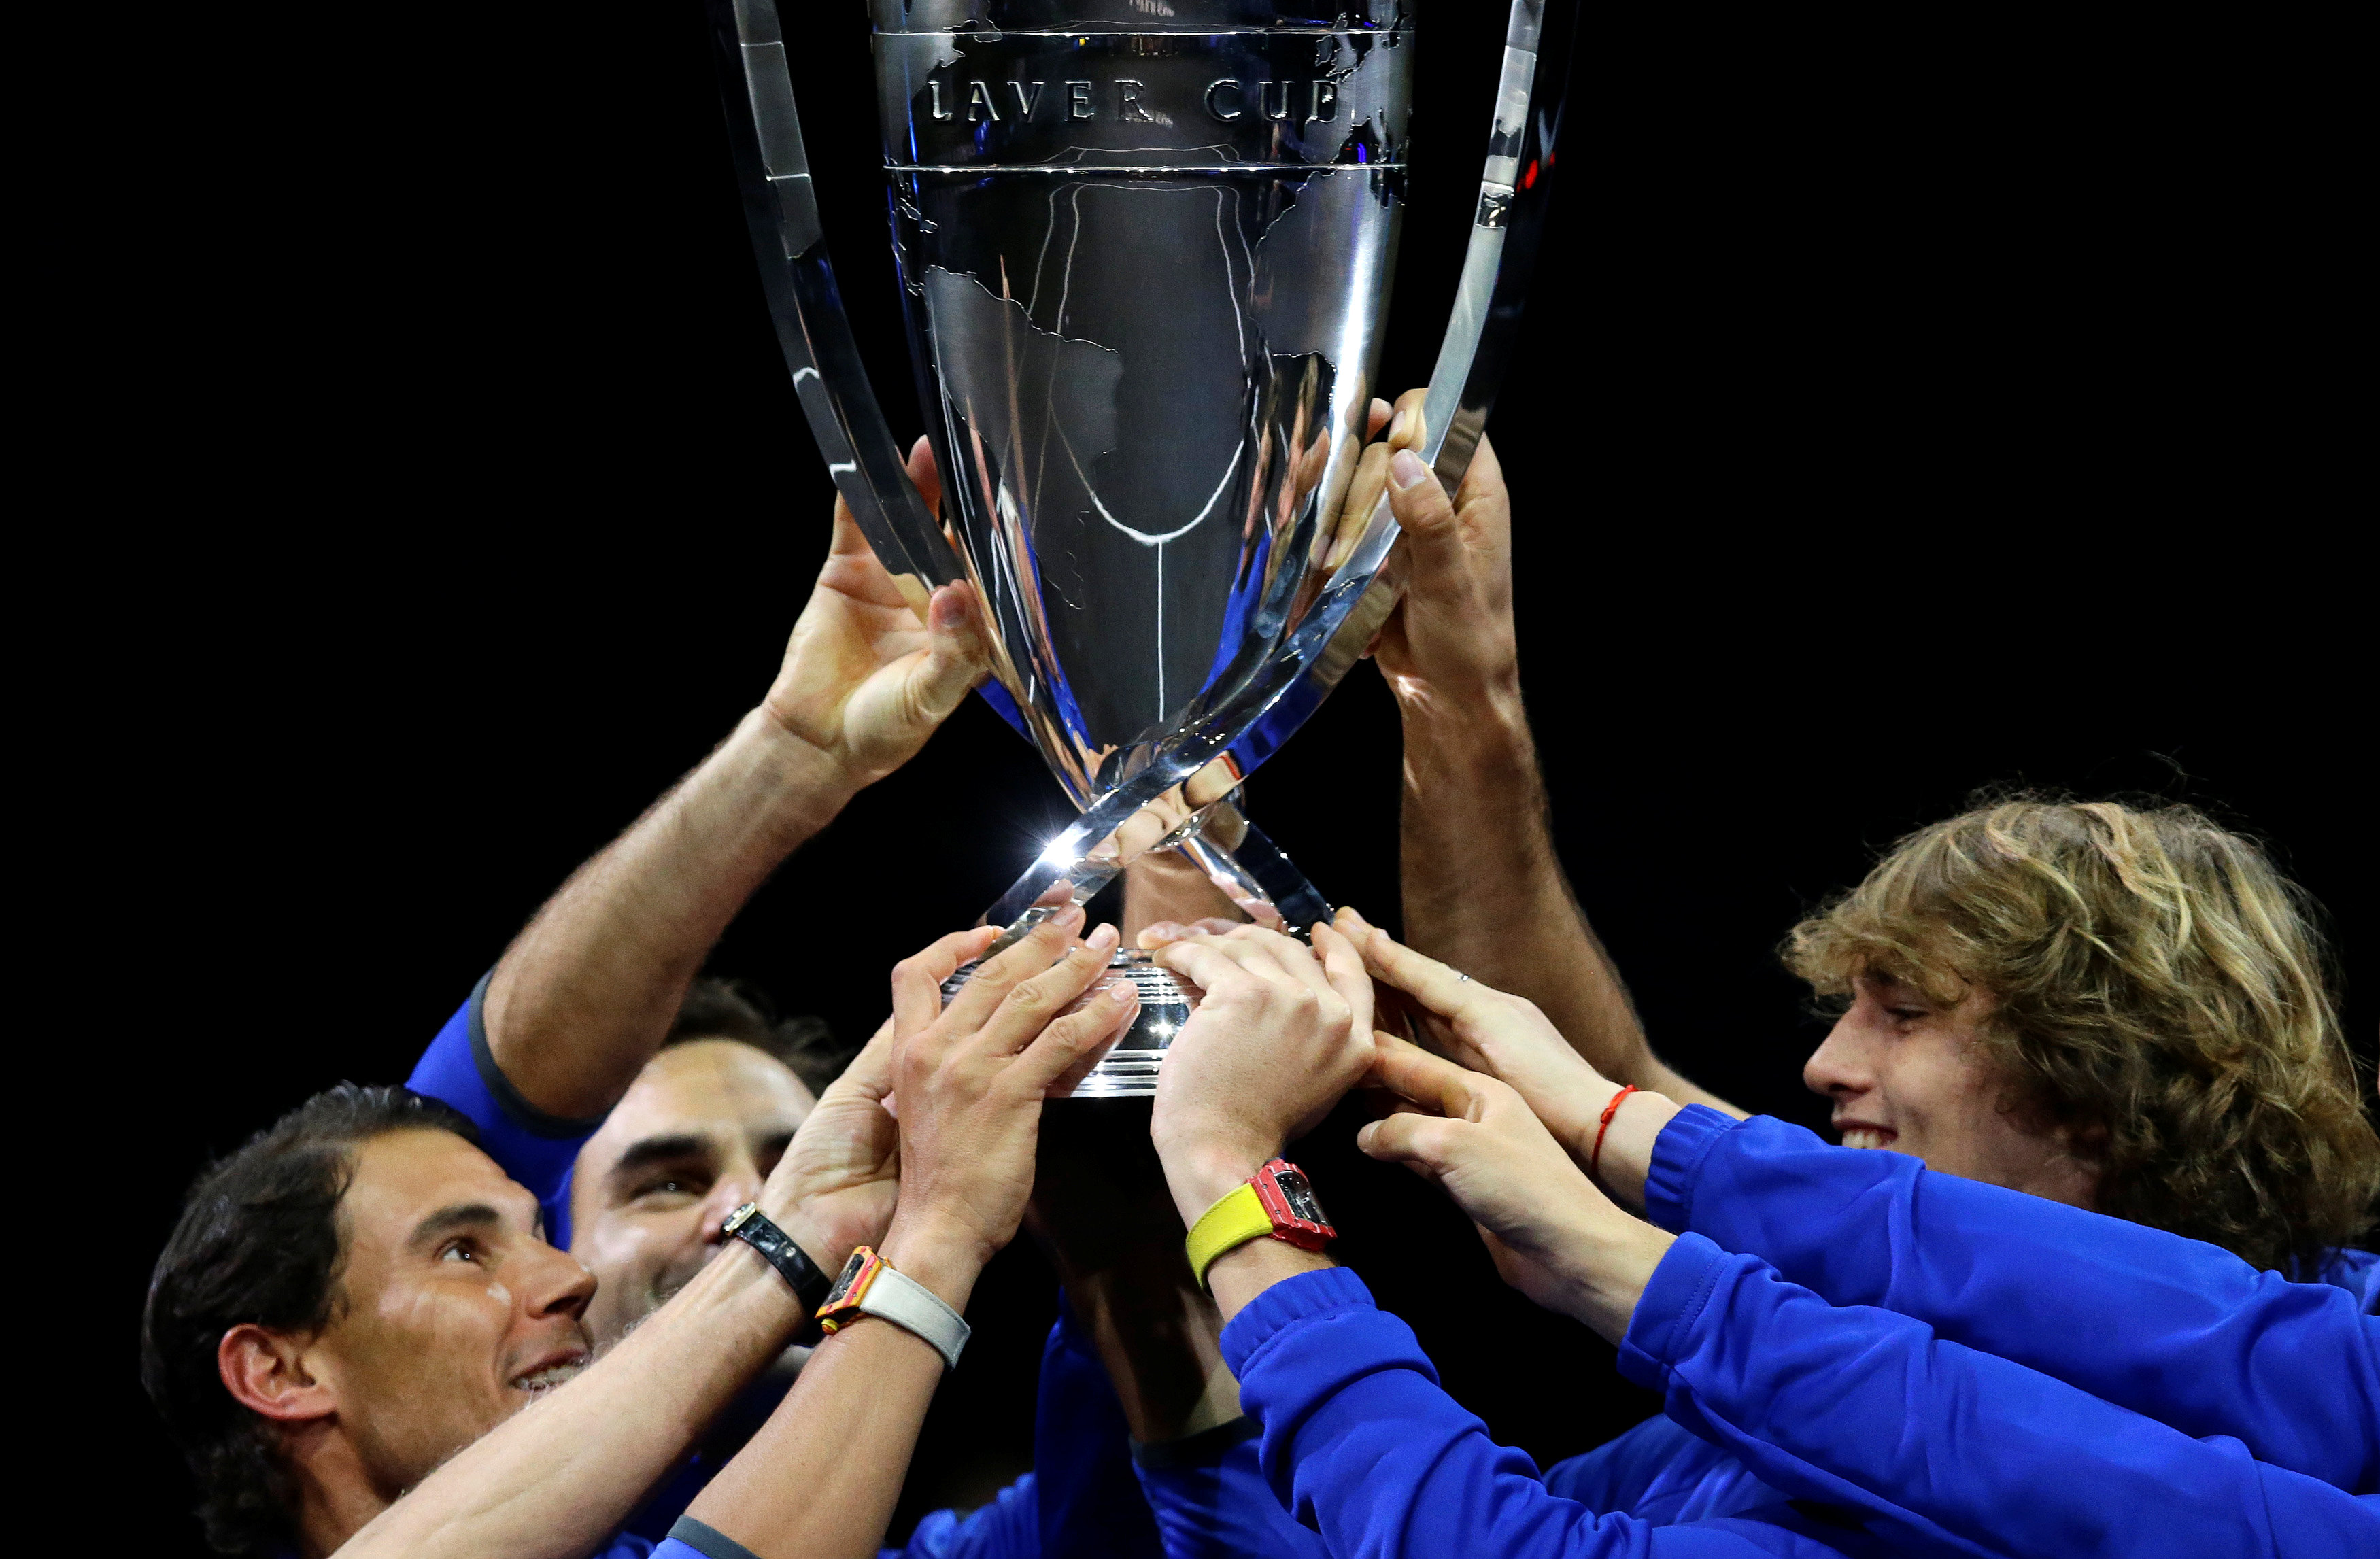 Đội châu Âu nâng cao chức vô địch Laver Cup 2017. Ảnh: REUTERS